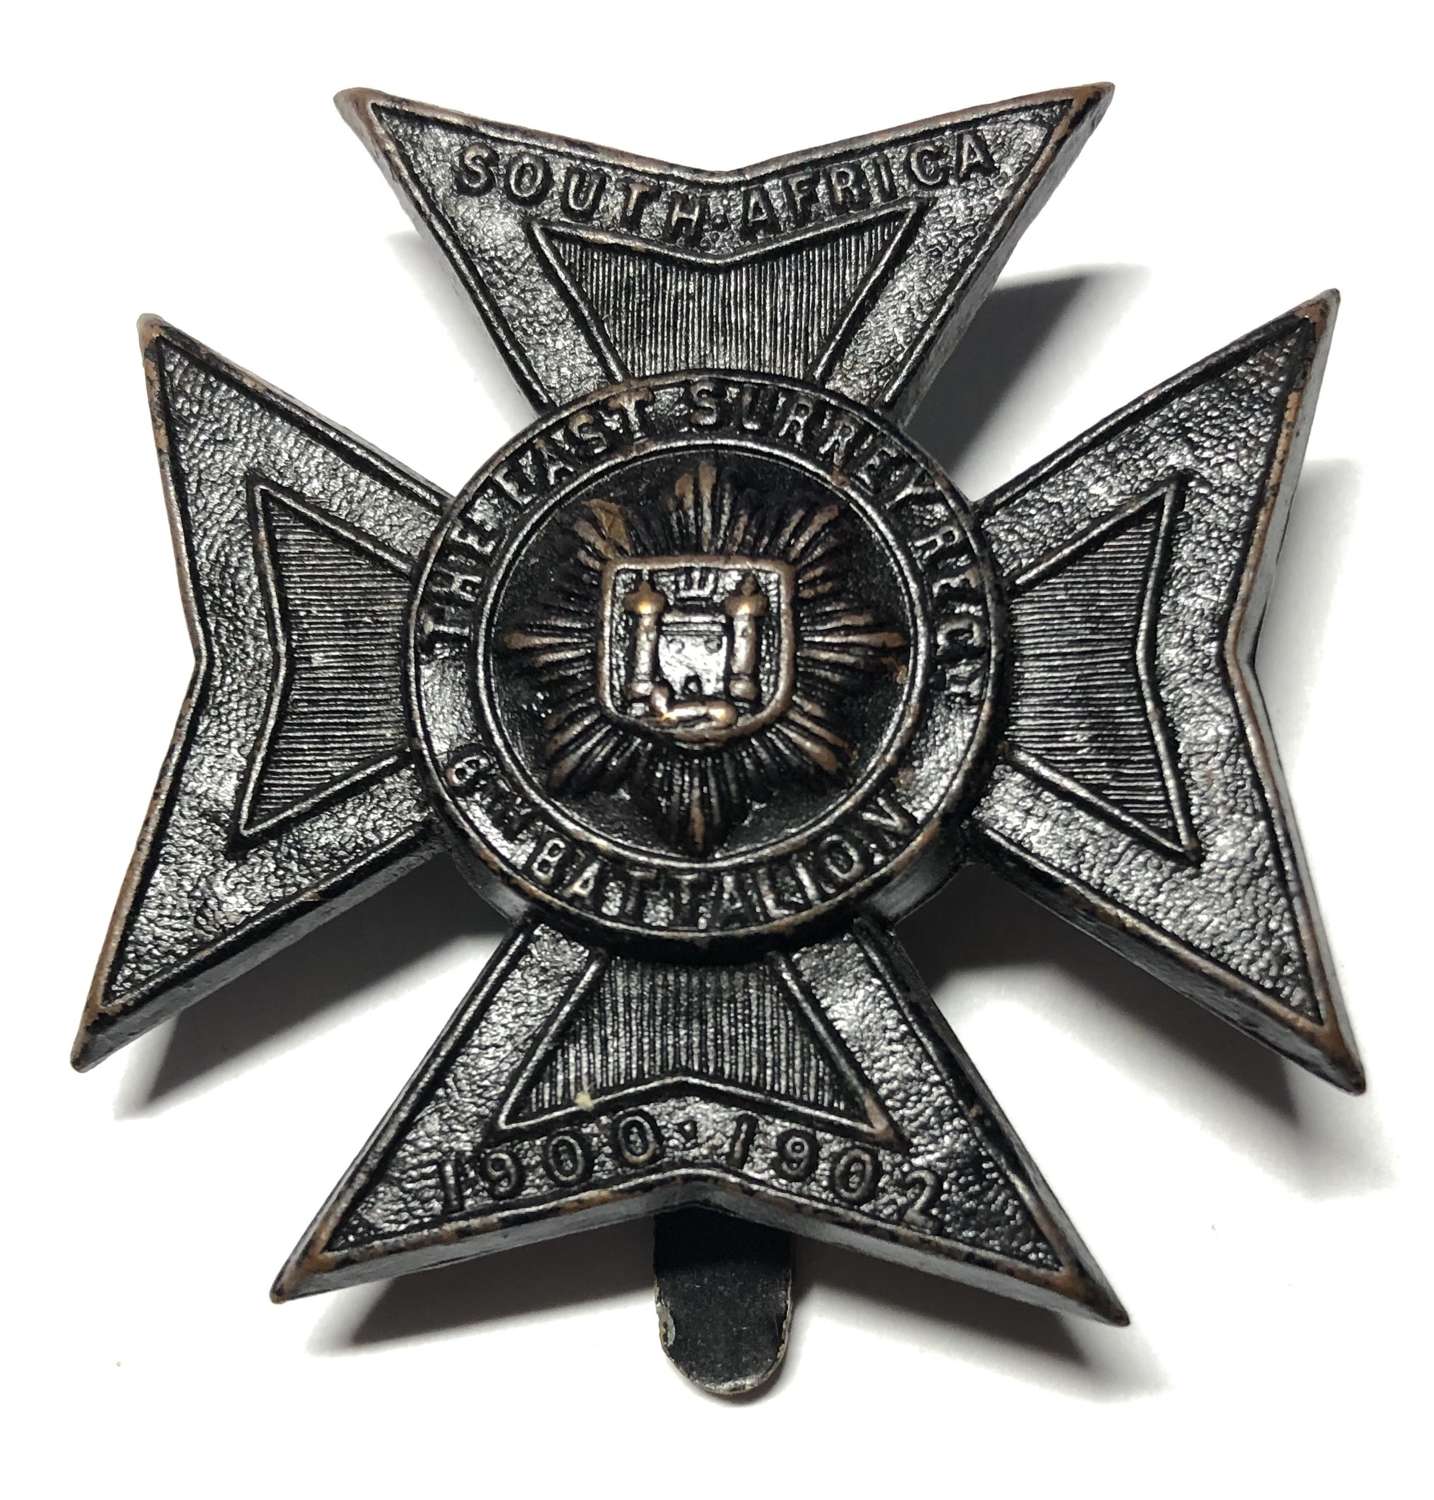 6th Bn. East Surrey Regiment cap badge circa 1908-15